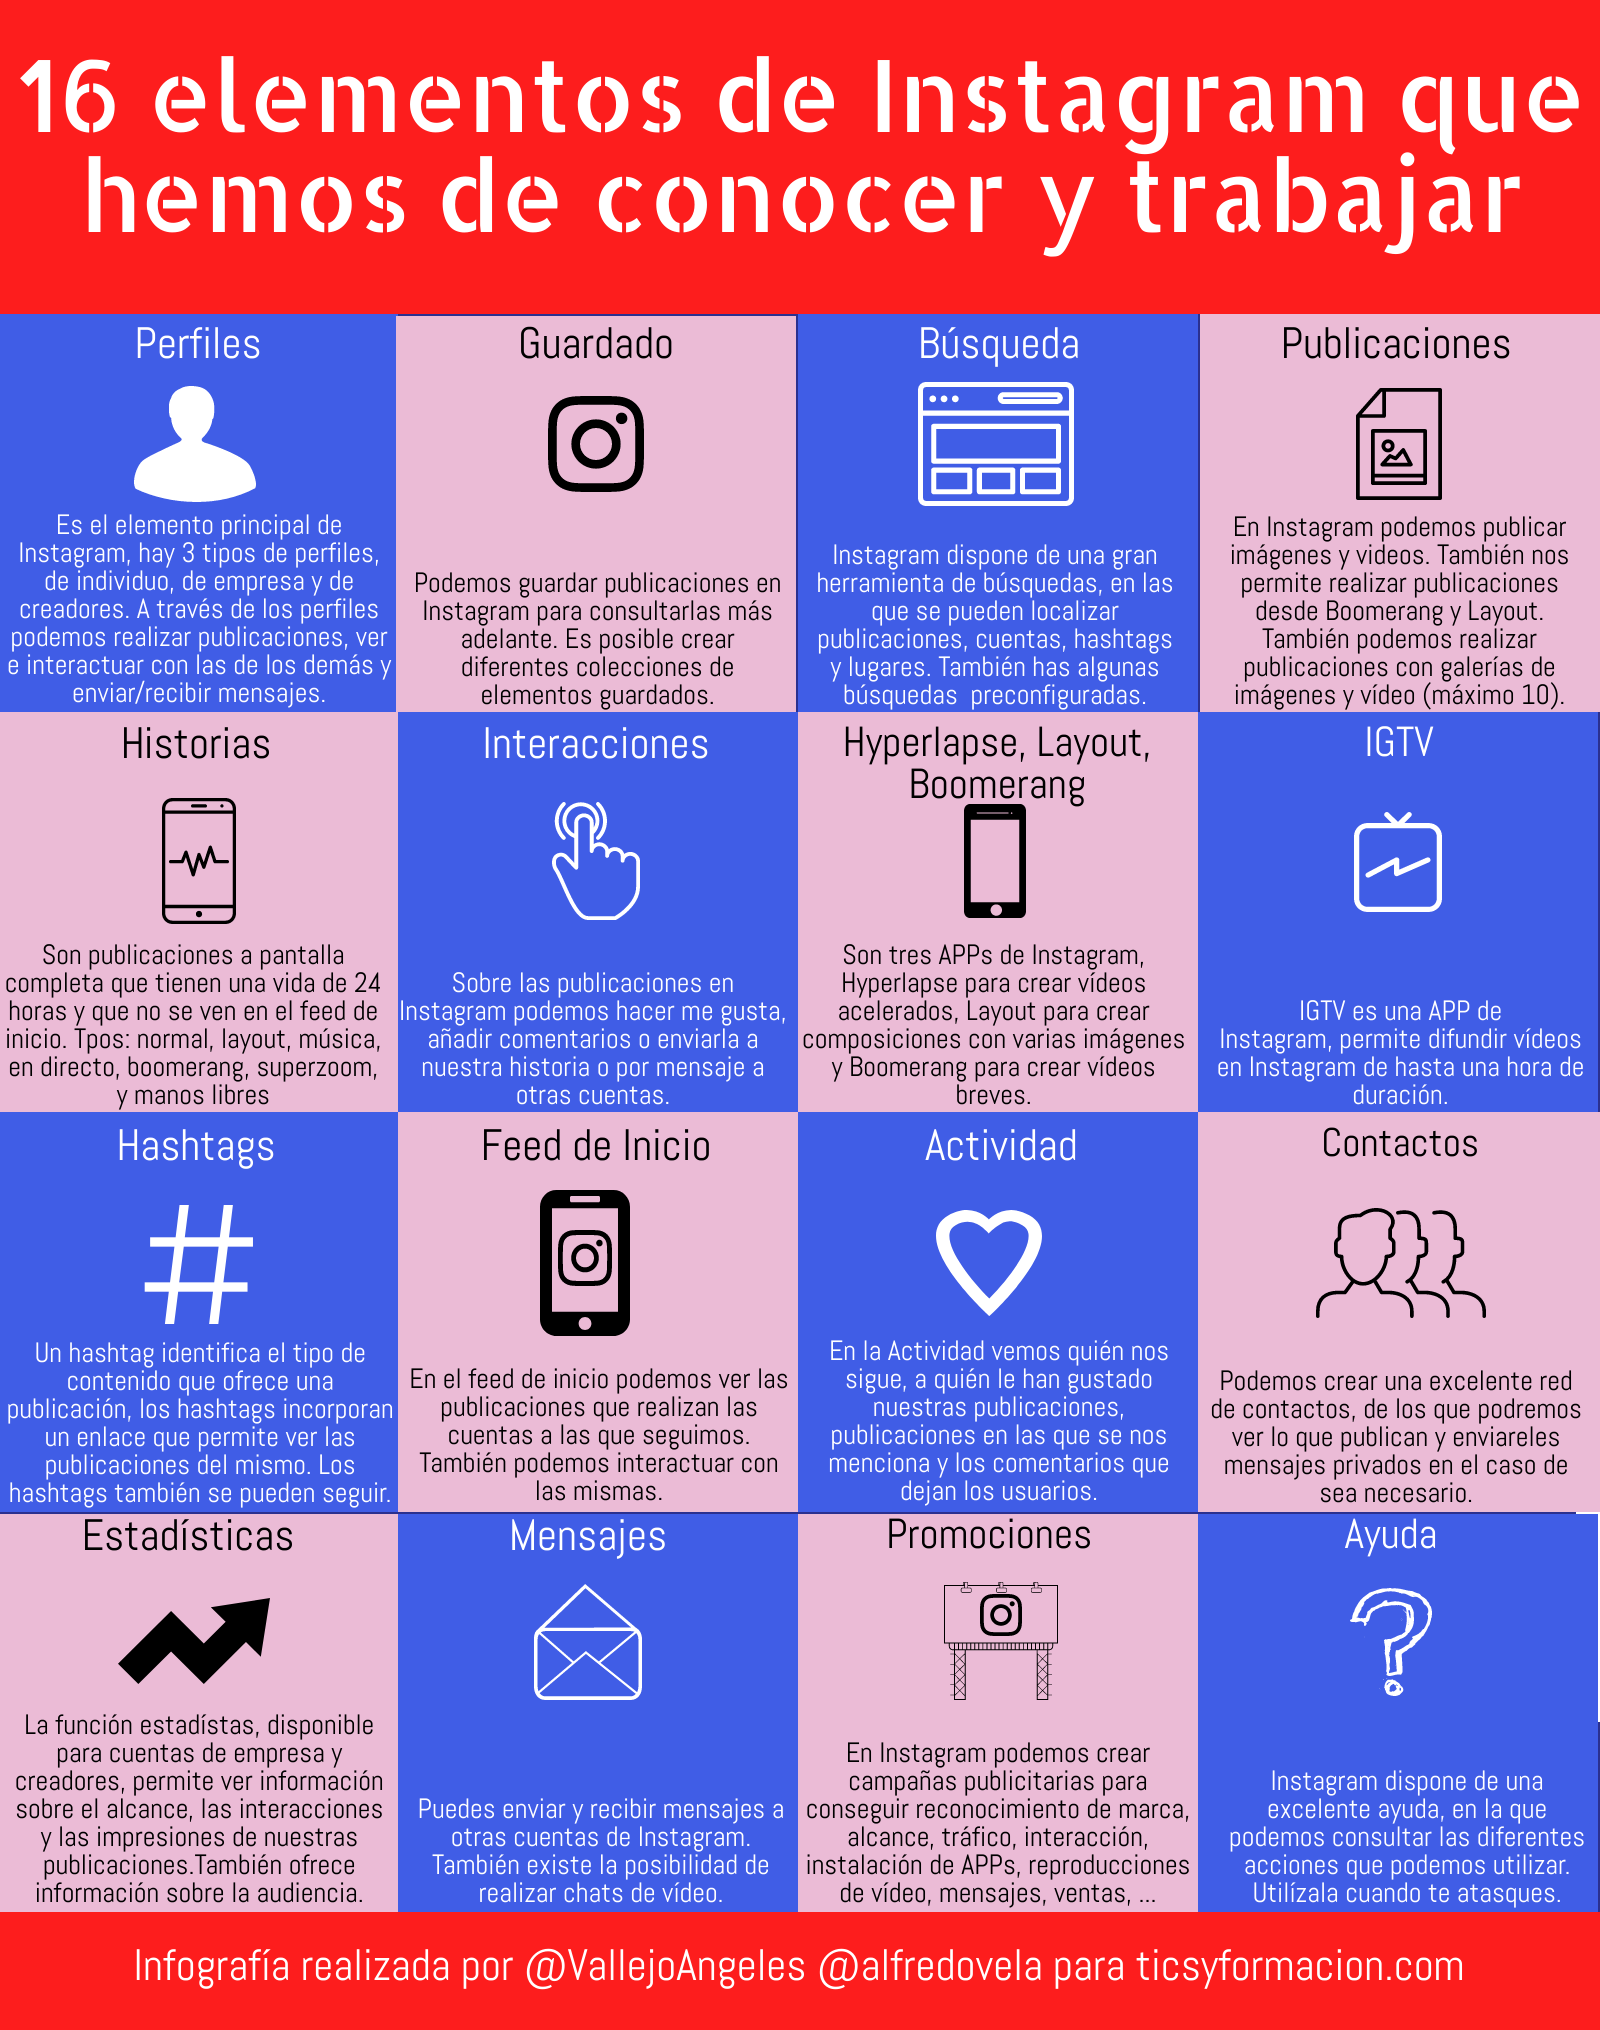 16 elementos de Instagram que hemos de conocer y trabajar #infografia #communitymanager #socialmedia